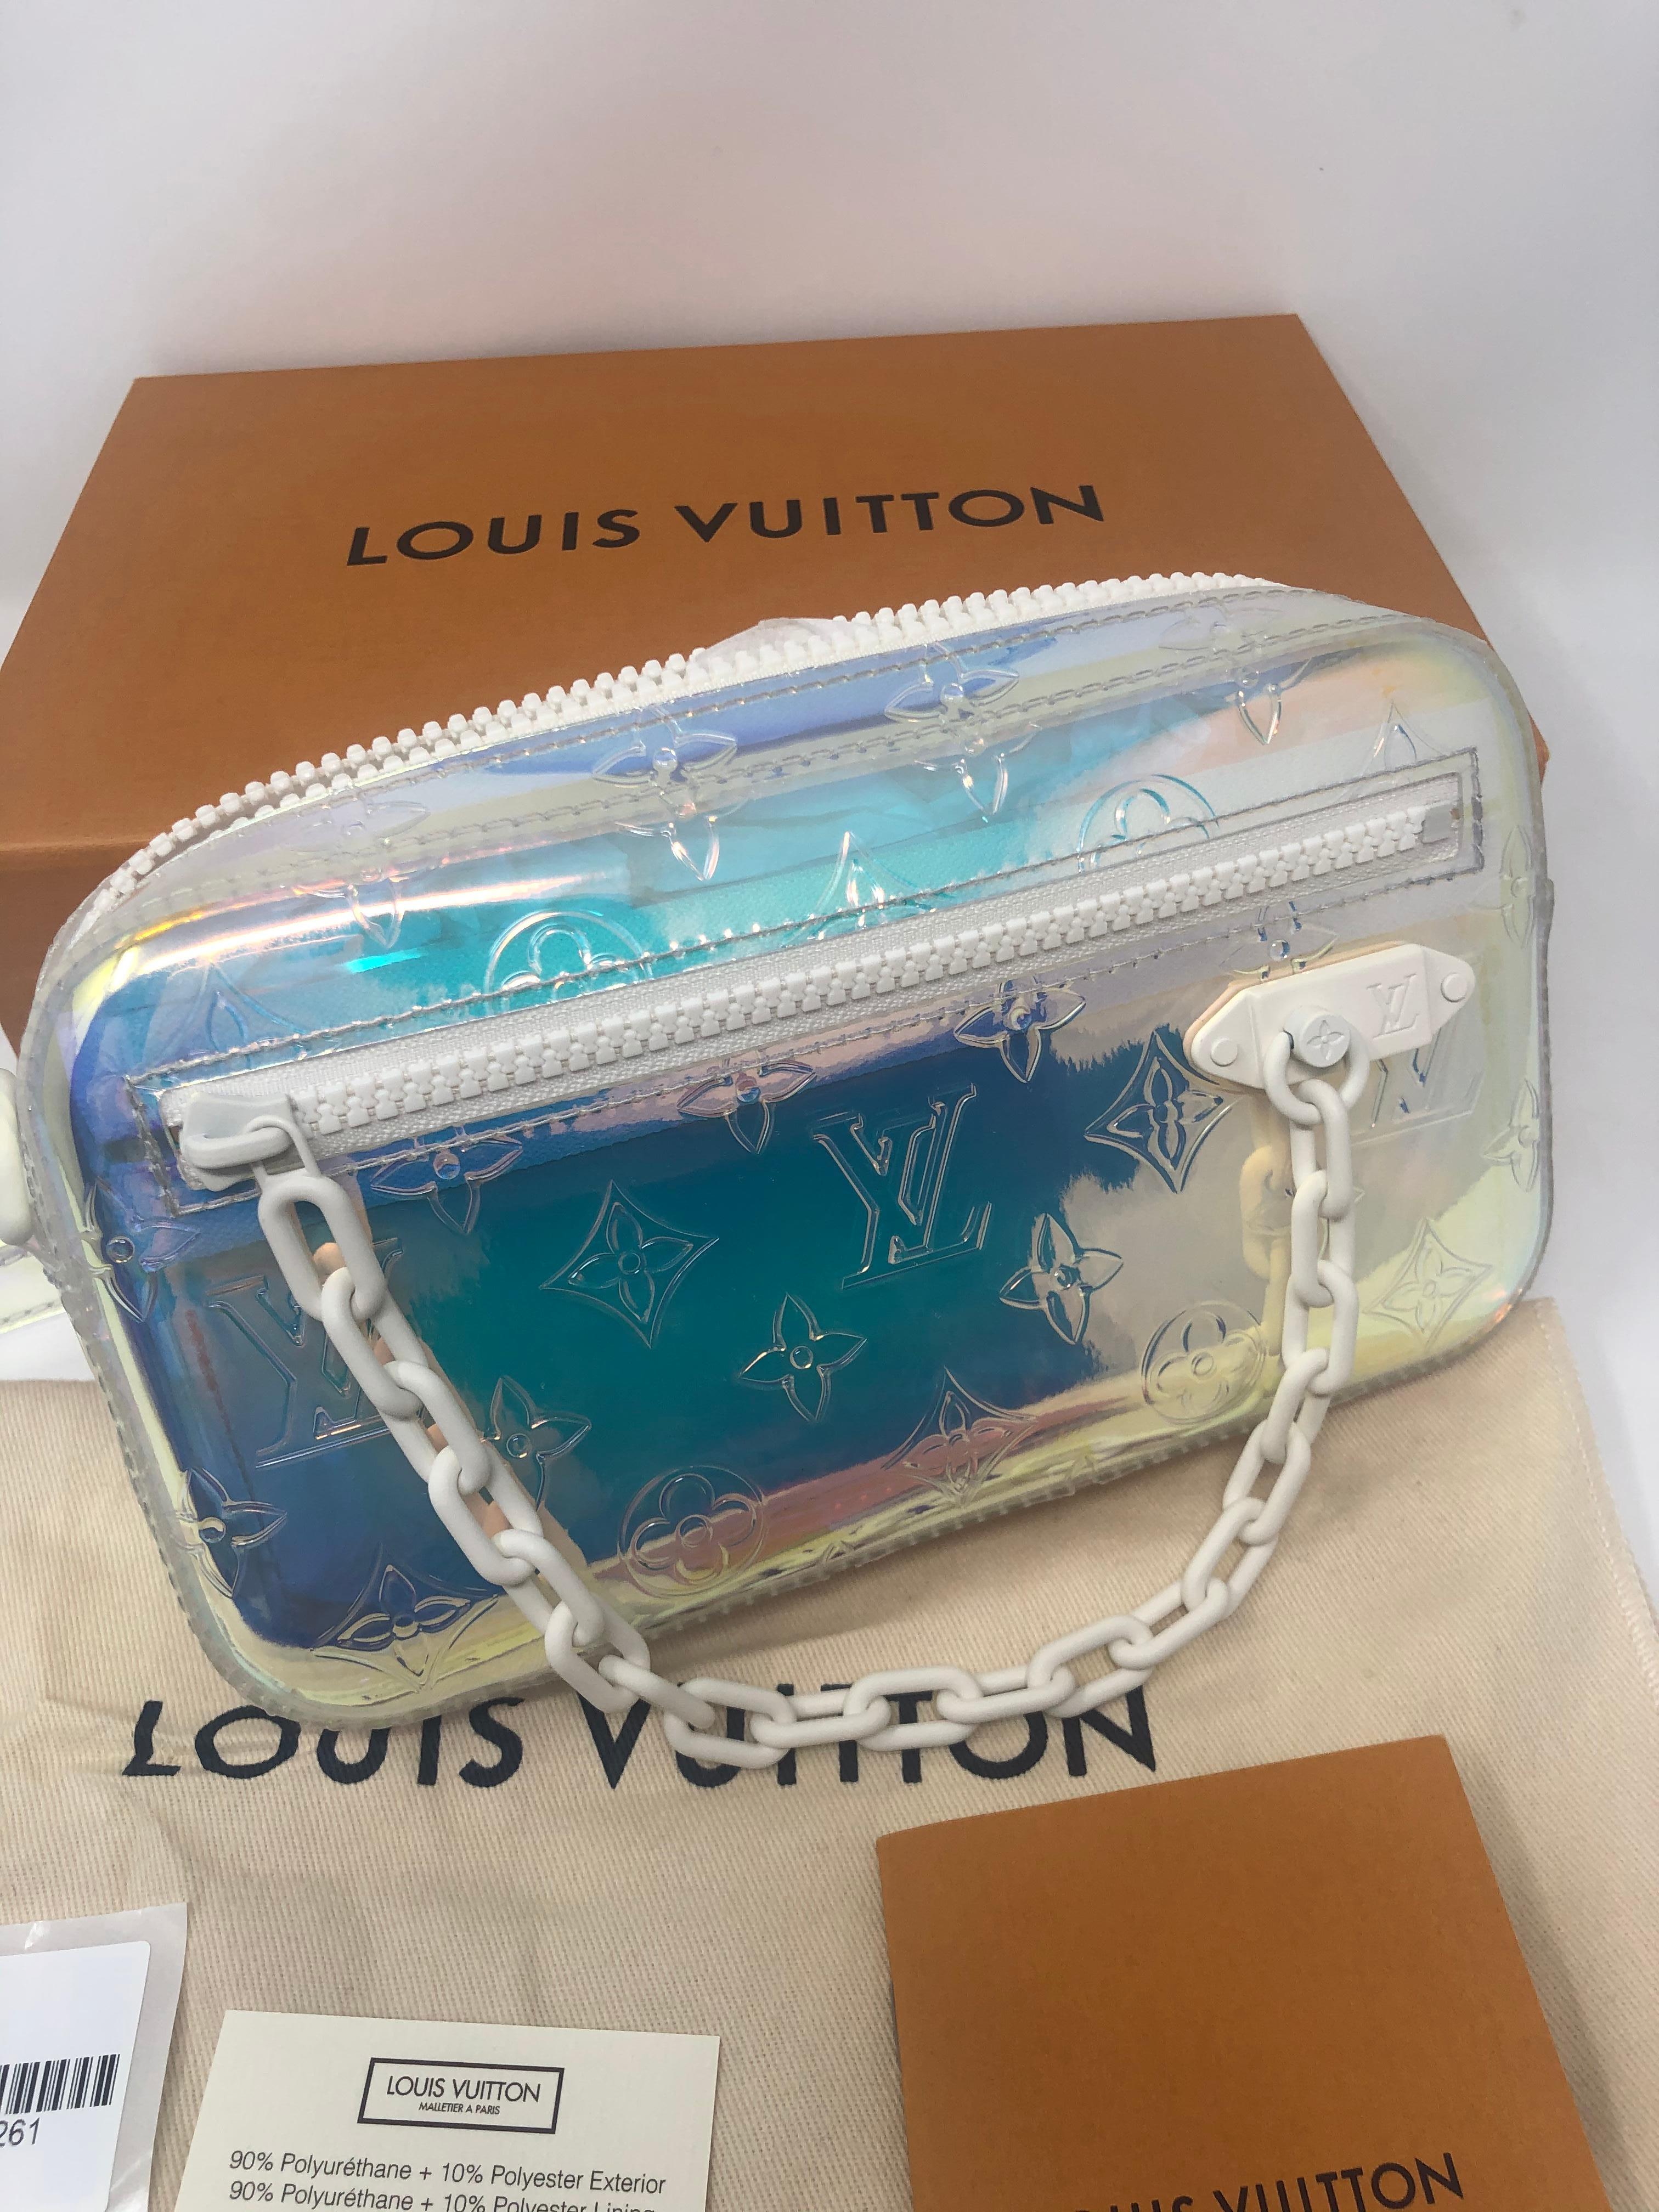 Louis Vuitton Virgil Abloh Prism Clutch 2